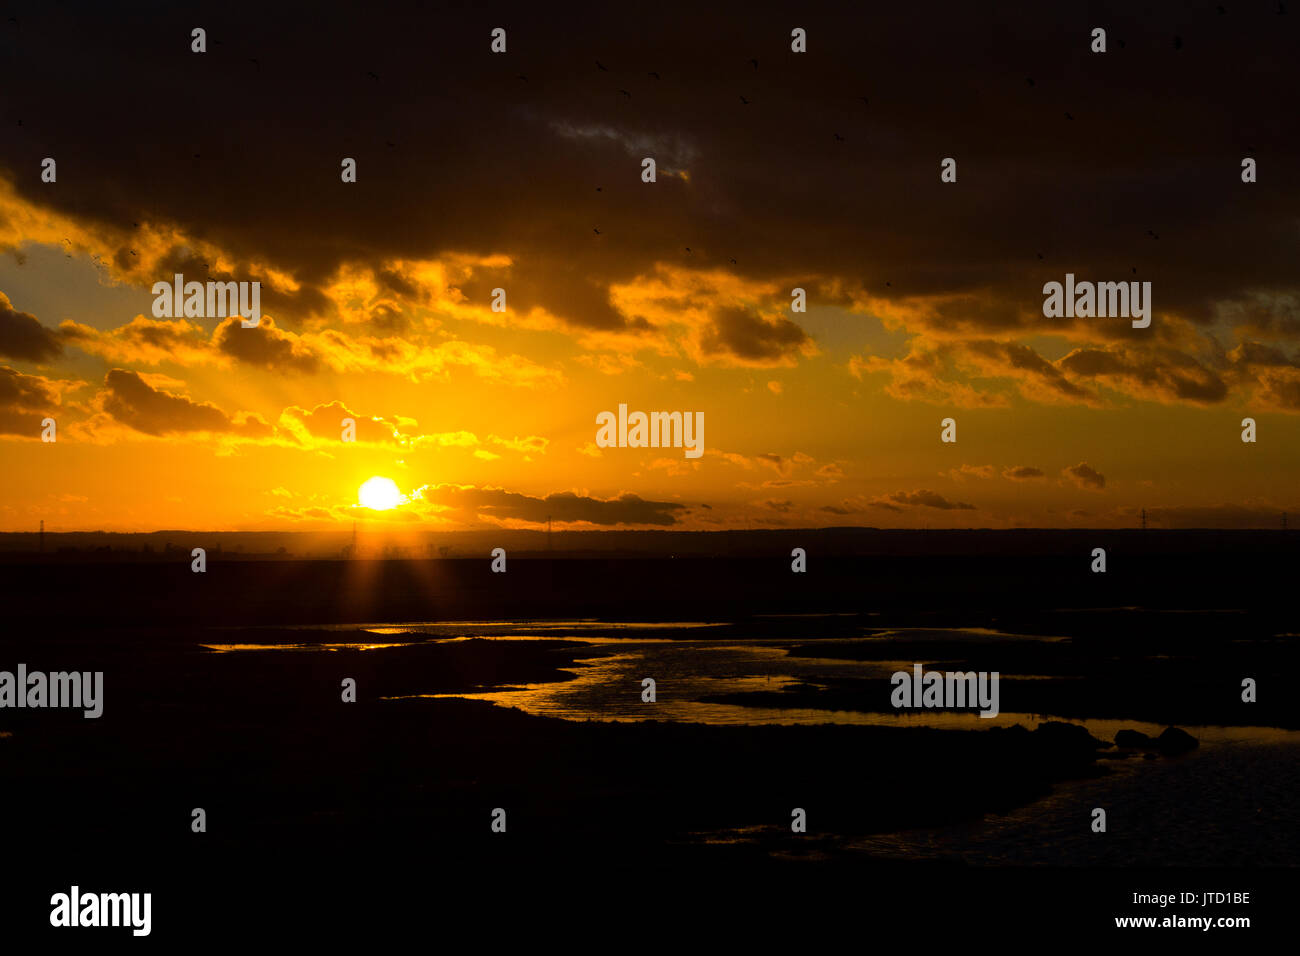 La isla de Sheppey. Espectacular puesta de sol sobre los pantanos. Foto de stock